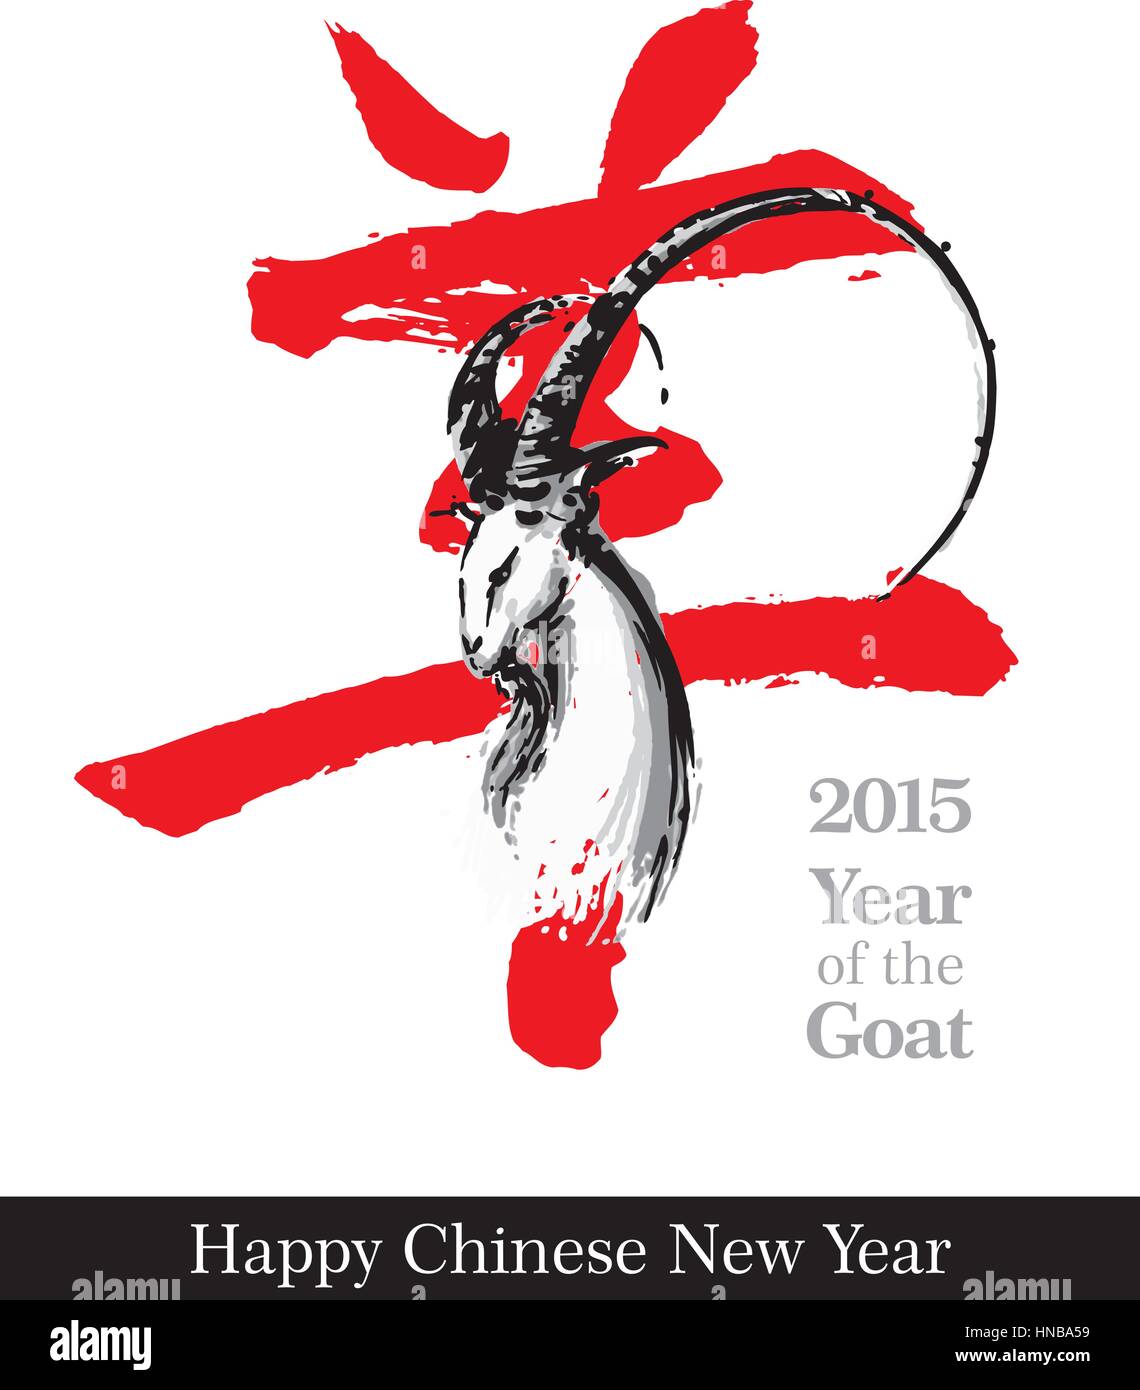 Illustrazione Vettoriale di disegnato a mano e di capra il logogramma cinese della parola "" di capra contro uno sfondo bianco. Illustrazione Vettoriale